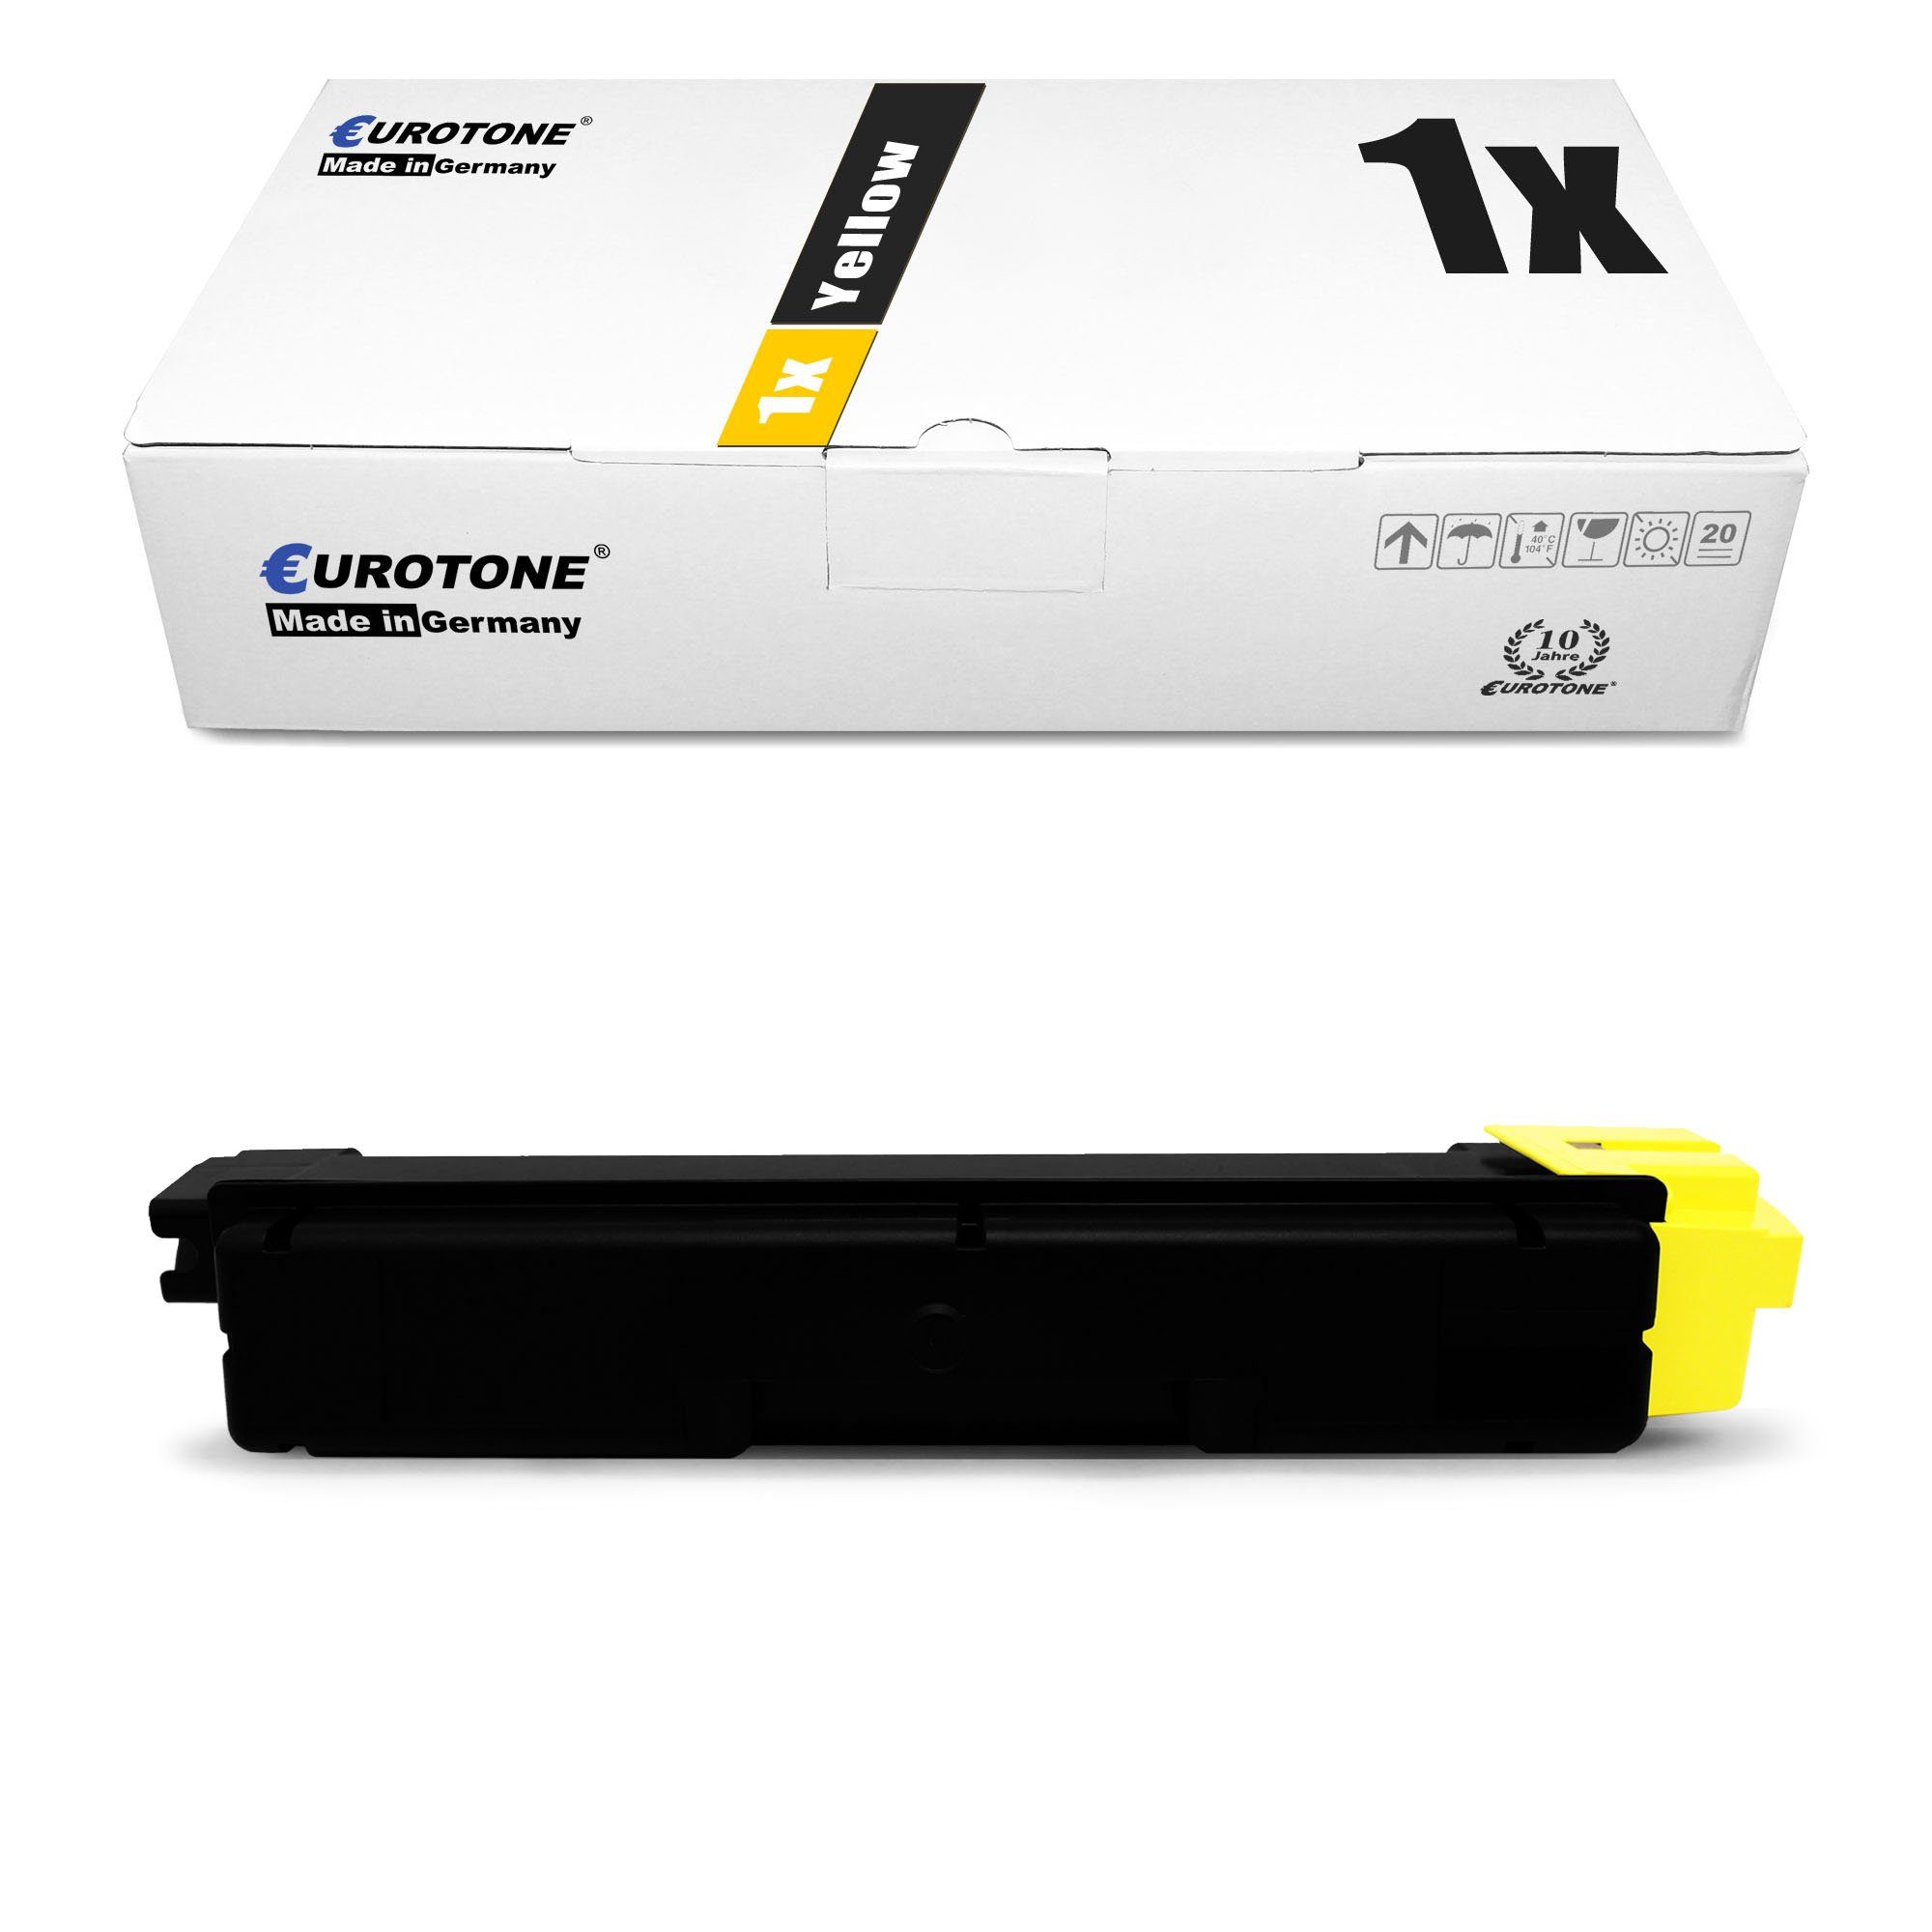 Eurotone Tonerkartusche Toner ersetzt Kyocera TK-5280 1T02TWANL0 Yellow